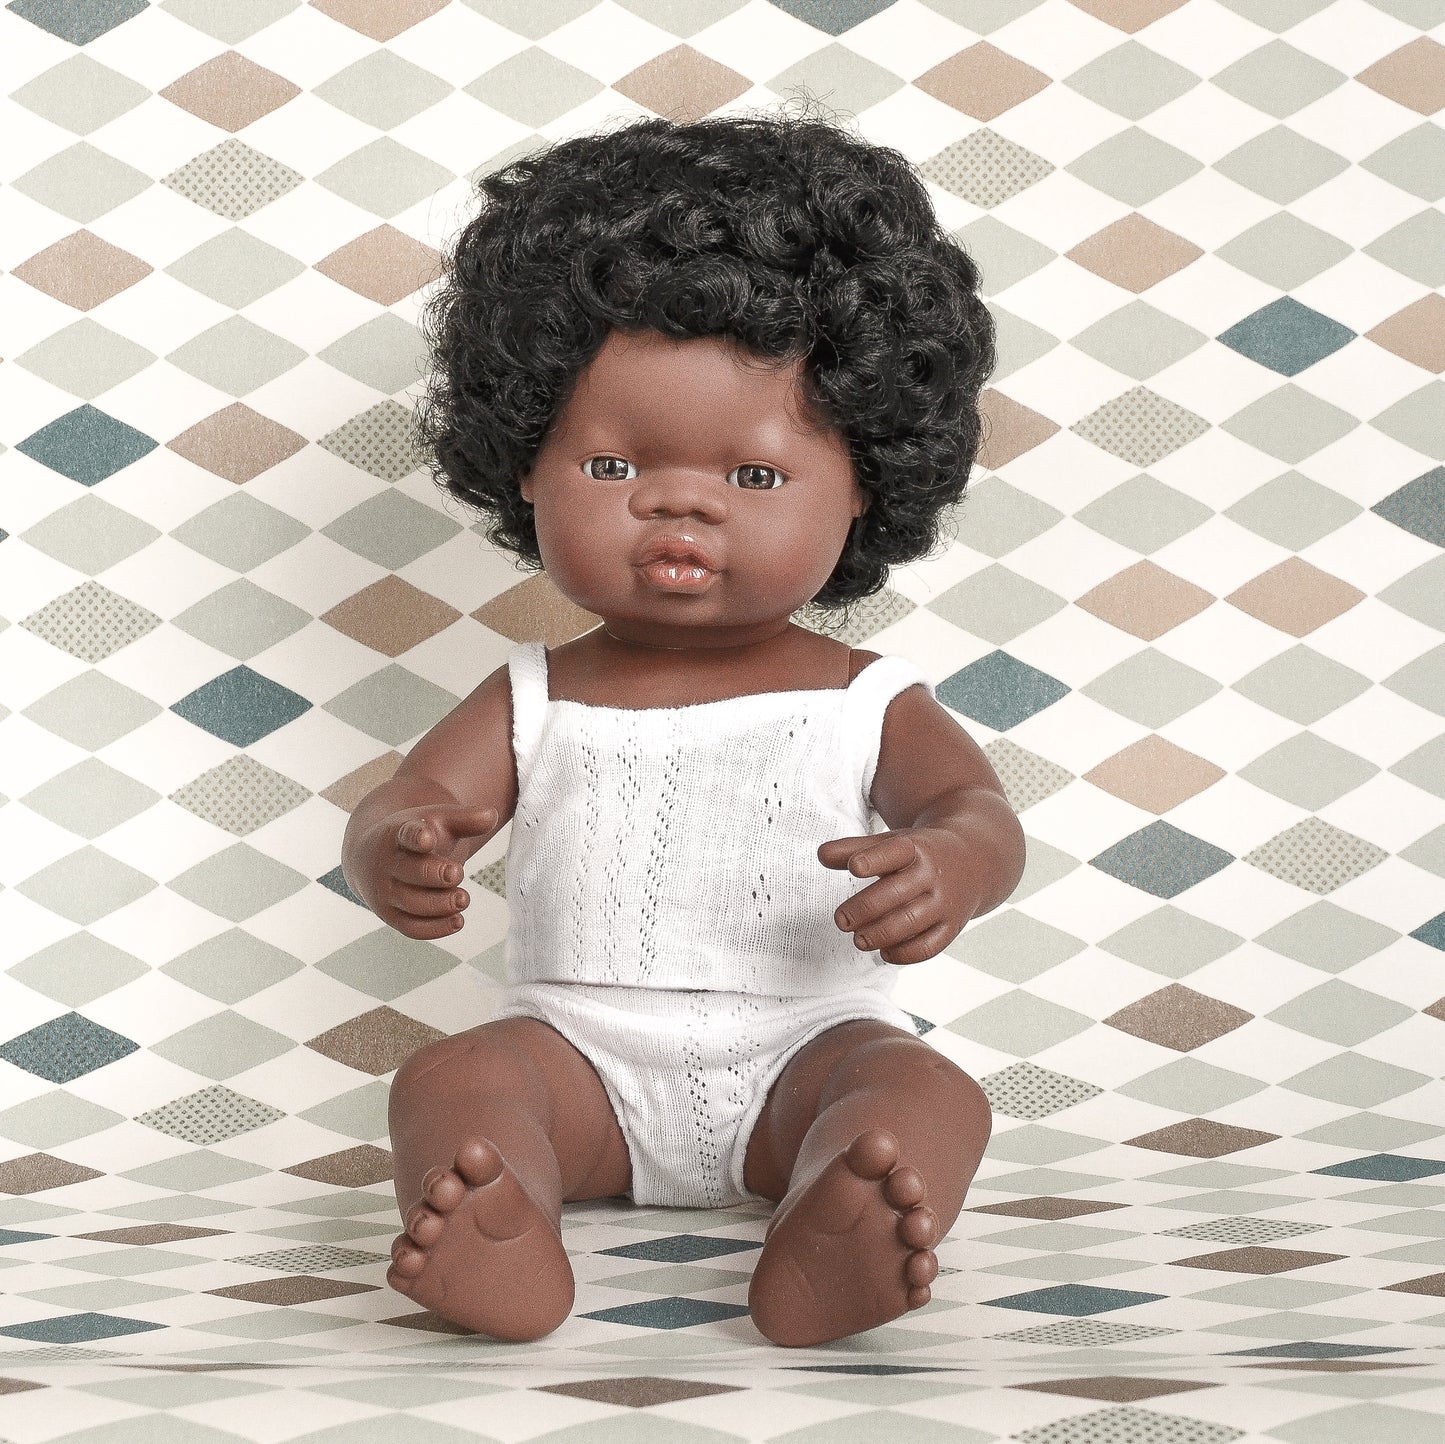 Puppe afrikanisch, schwarze Locken, Junge, 38cm, Miniland